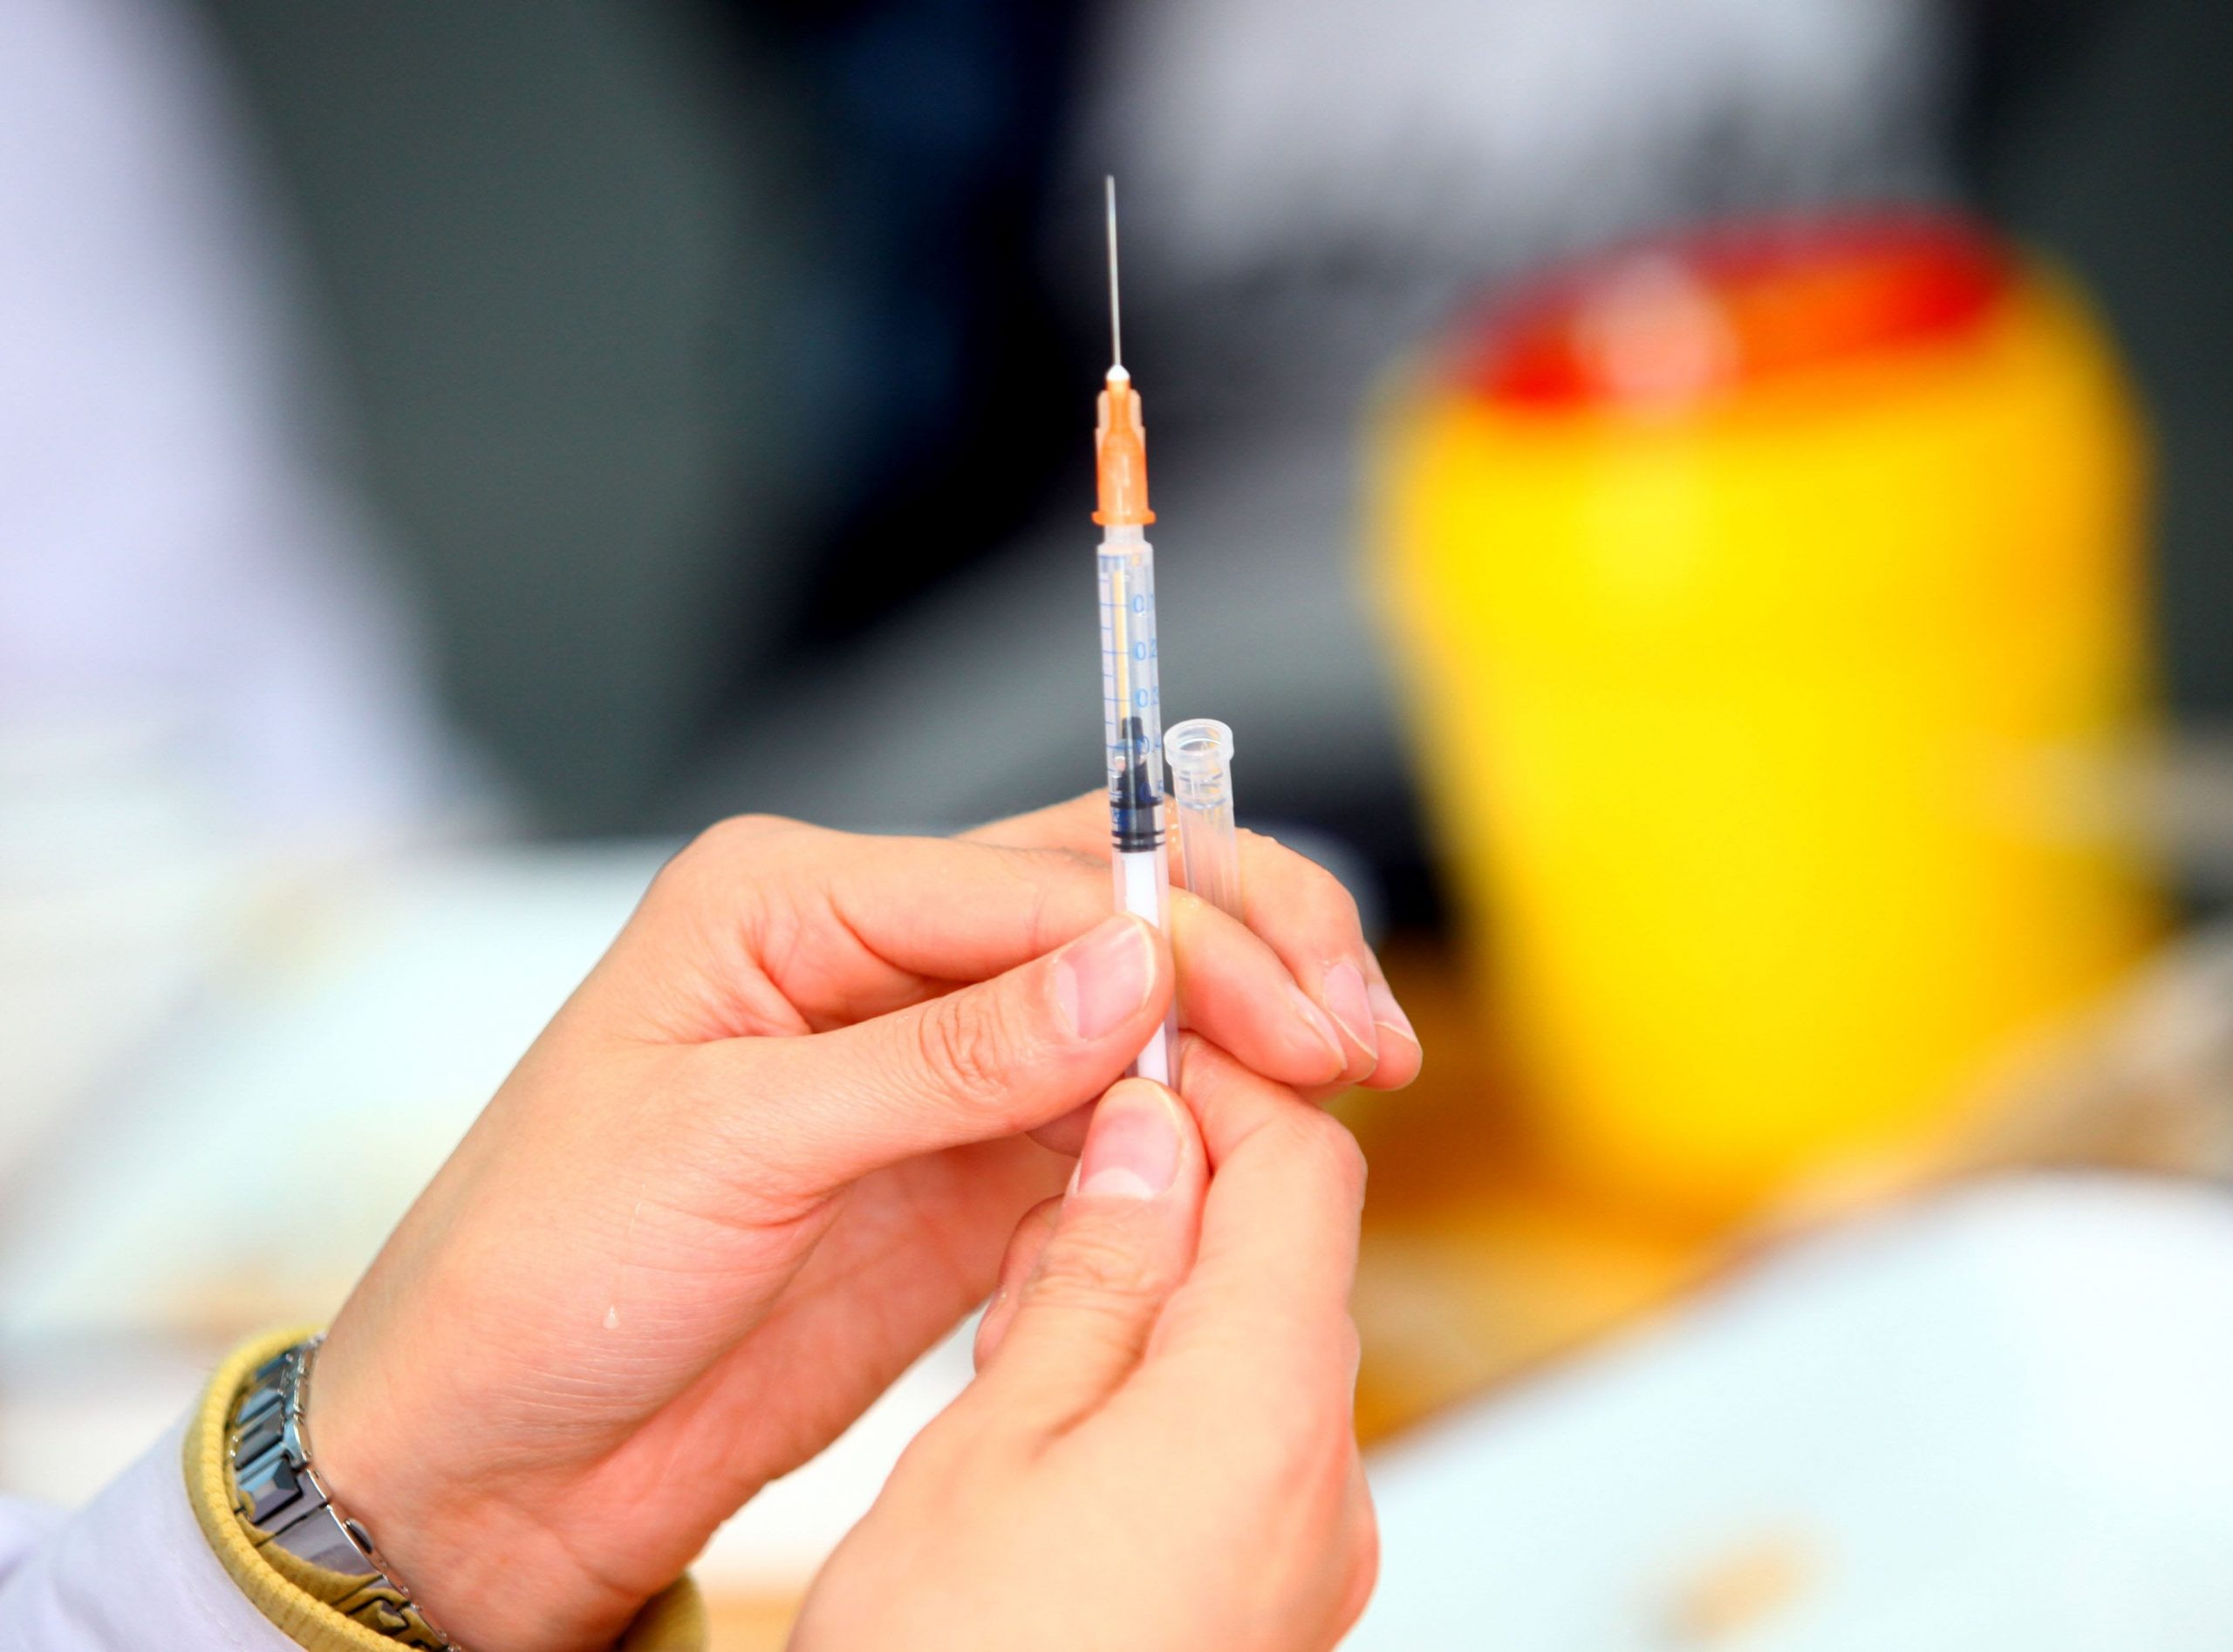 Vaccinarea persoanelor infectate cu coronavirus ar fi inutilă și periculoasă